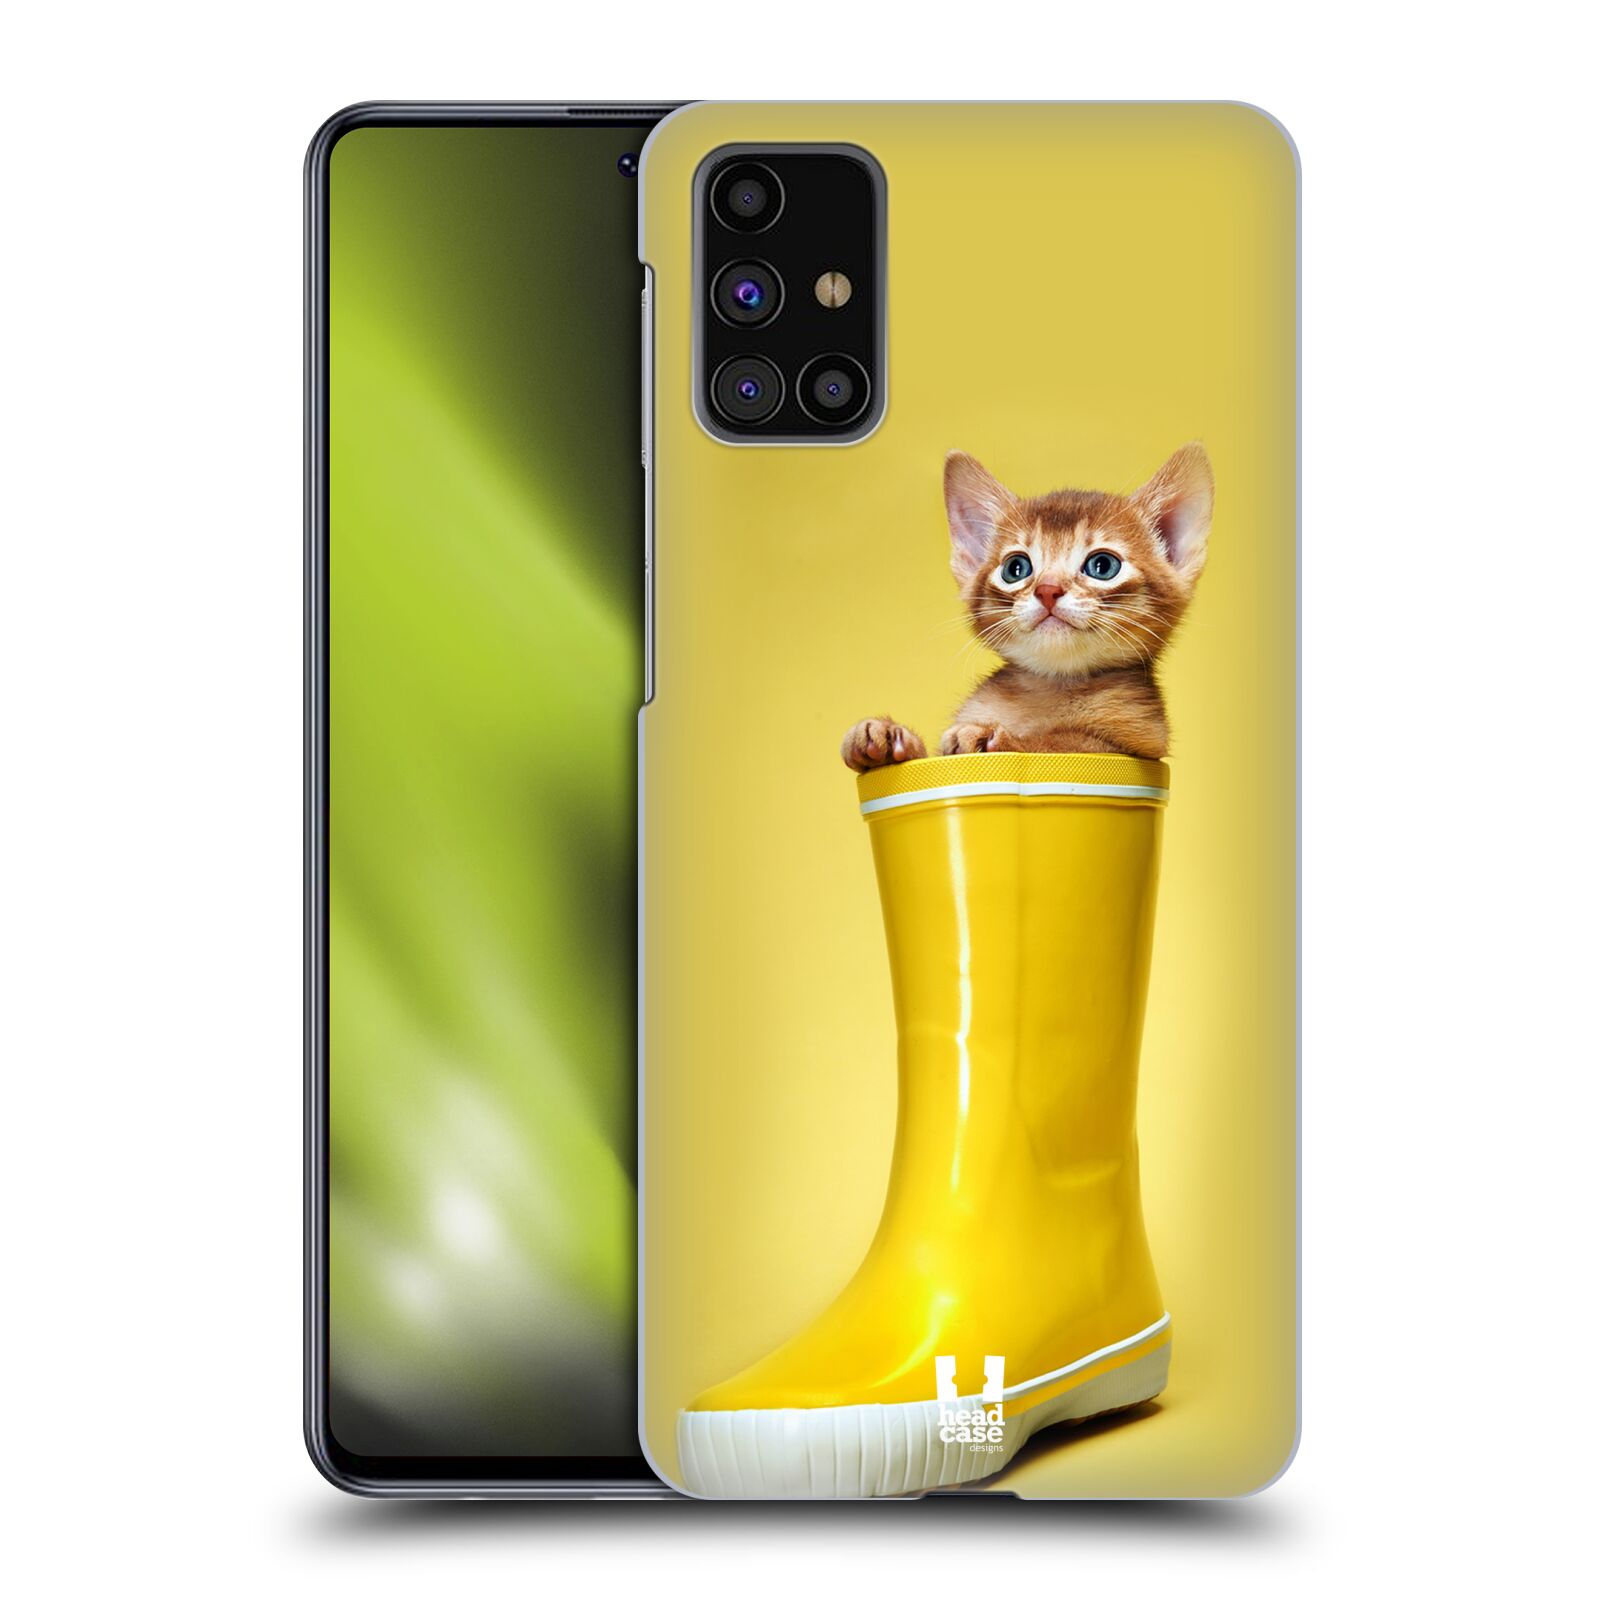 Plastový obal HEAD CASE na mobil Samsung Galaxy M31s vzor Legrační zvířátka kotě v botě žlutá